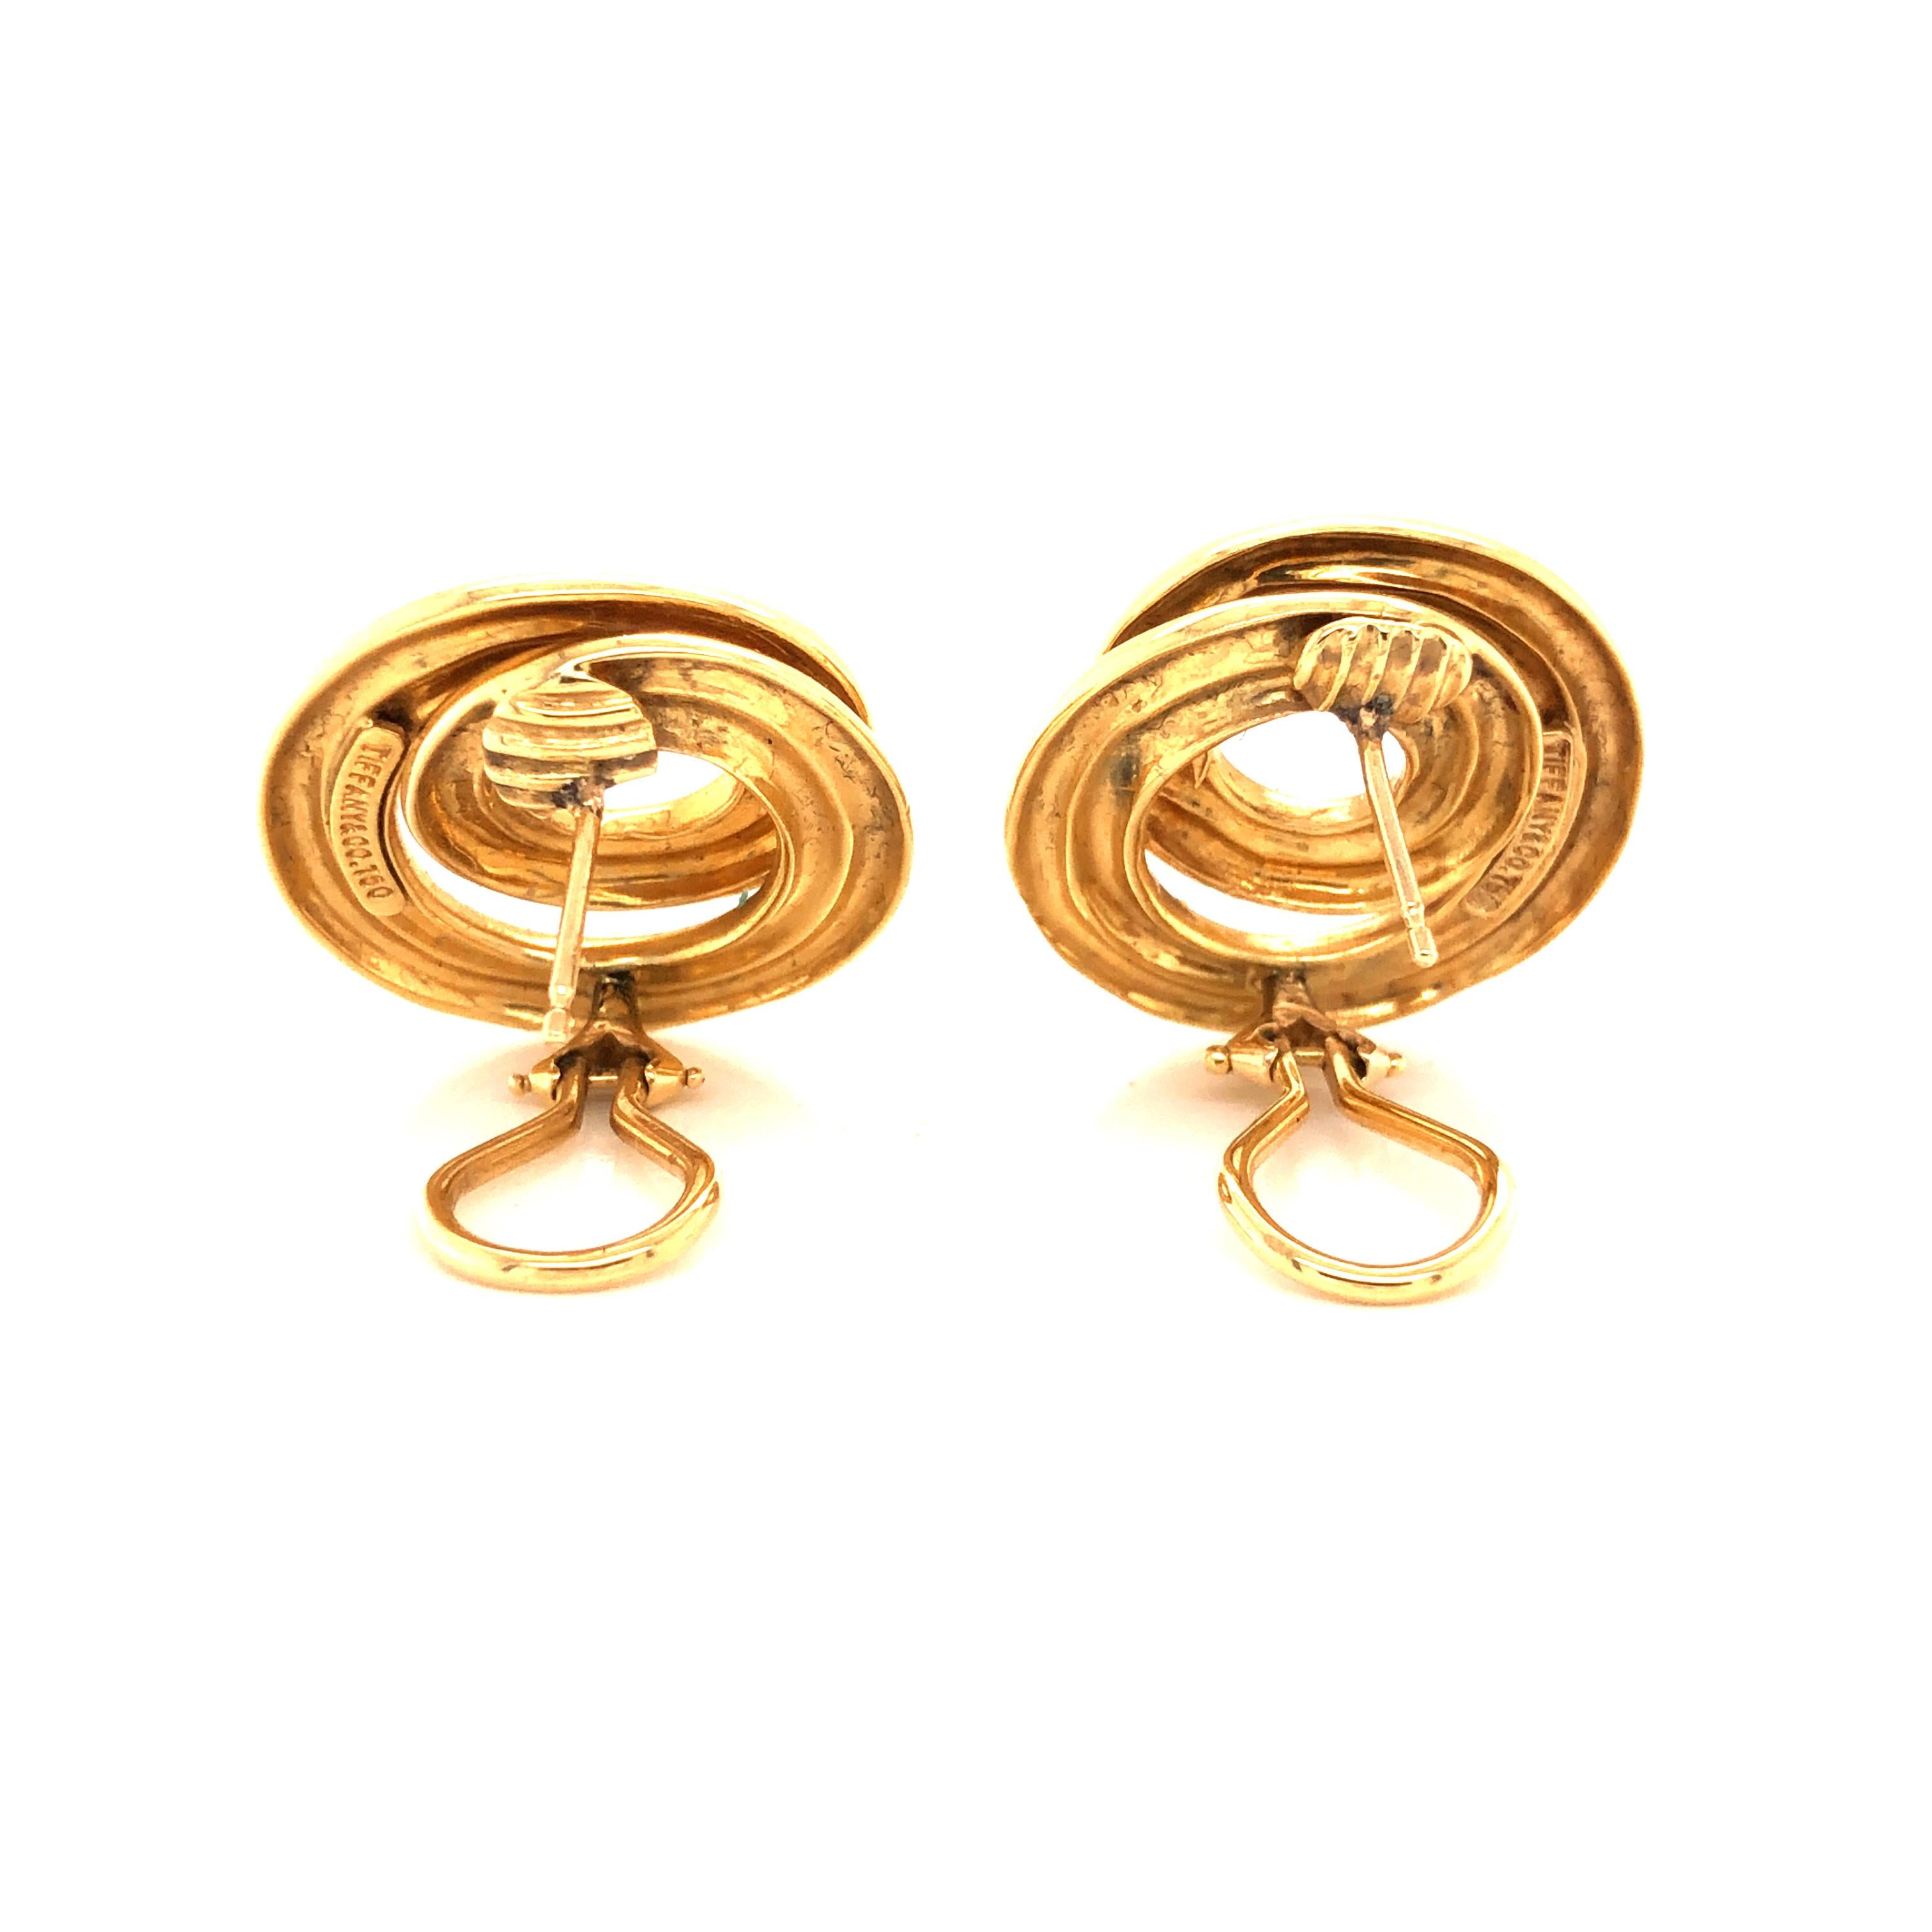 Tiffany & Co. Retro Runde Ohrringe aus 18 Karat Gelbgold mit Wirbel Damen